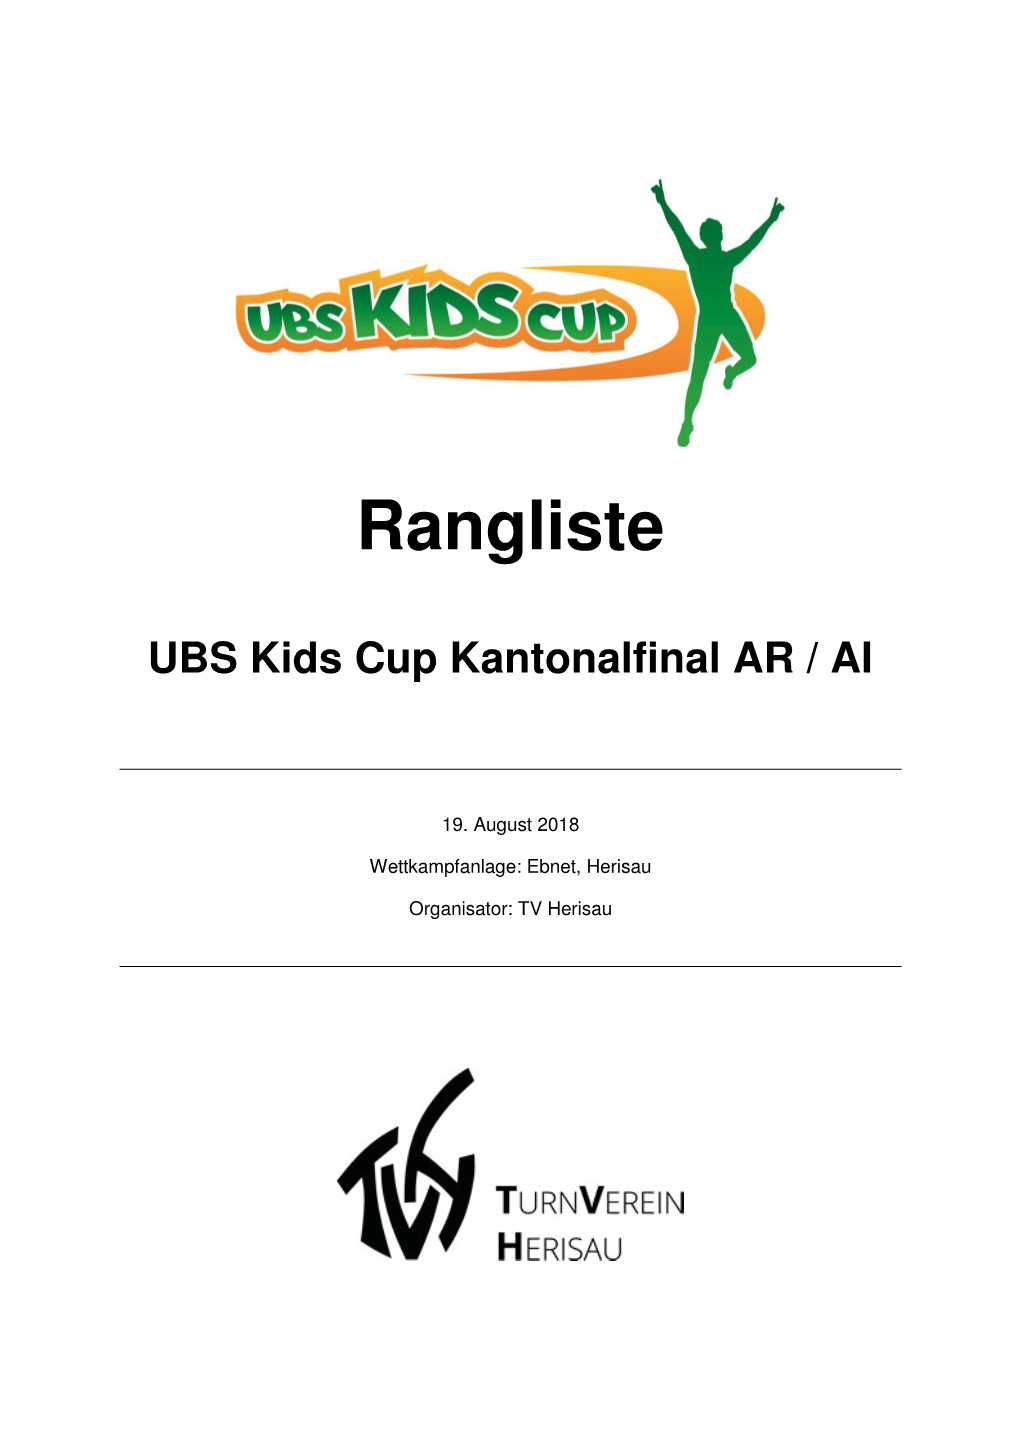 UBS Kids Cup Kantonalfinal AR / AI